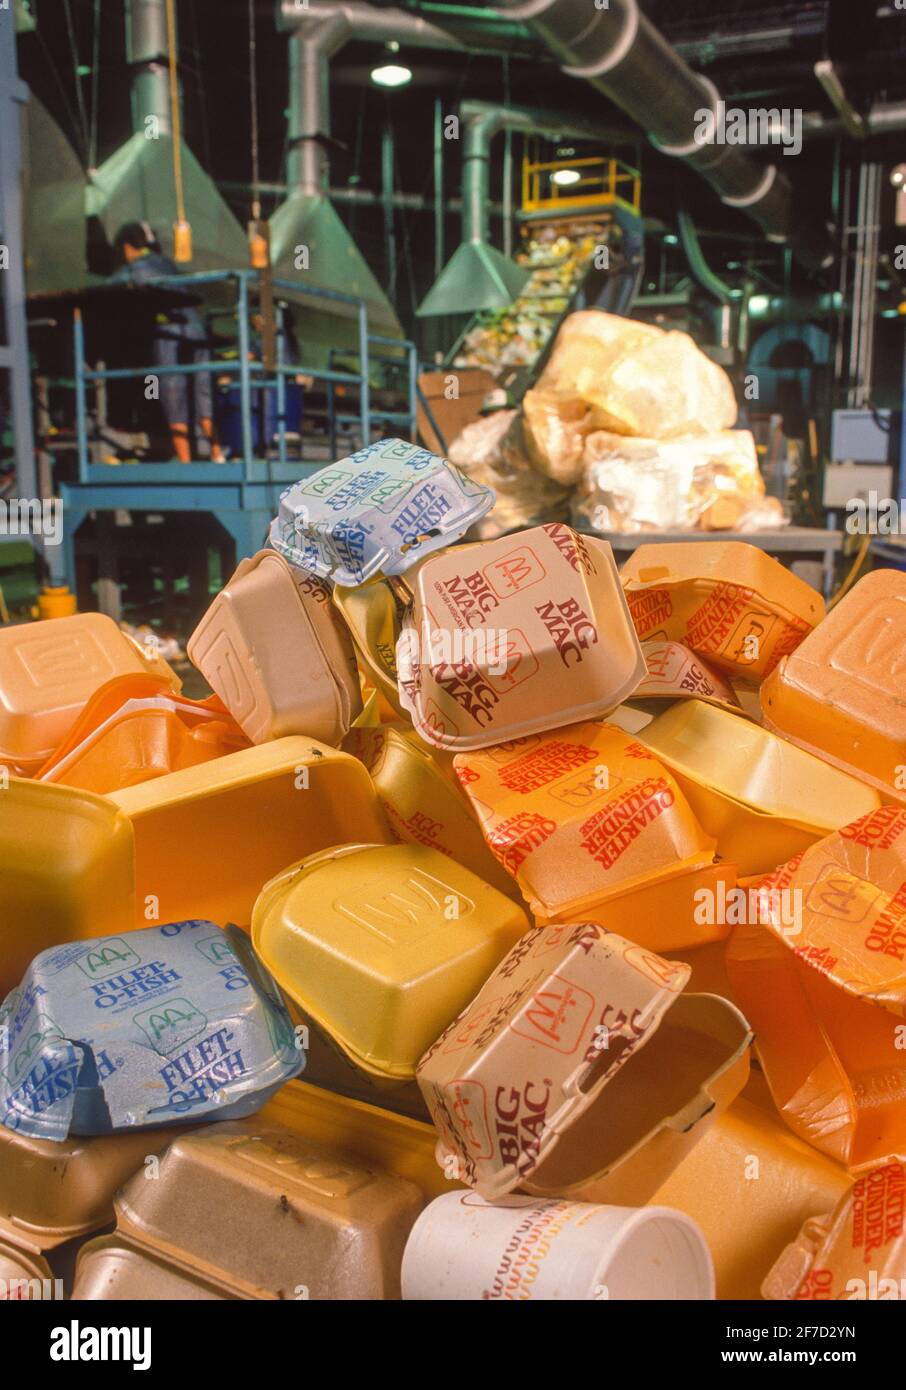 LEOMINSTER, MASSACHUSETTS, USA, 7 AGOSTO 1990 - riciclaggio di contenitori fast food in polistirene, polistirolo, presso lo stabilimento Plastic Again. Foto Stock